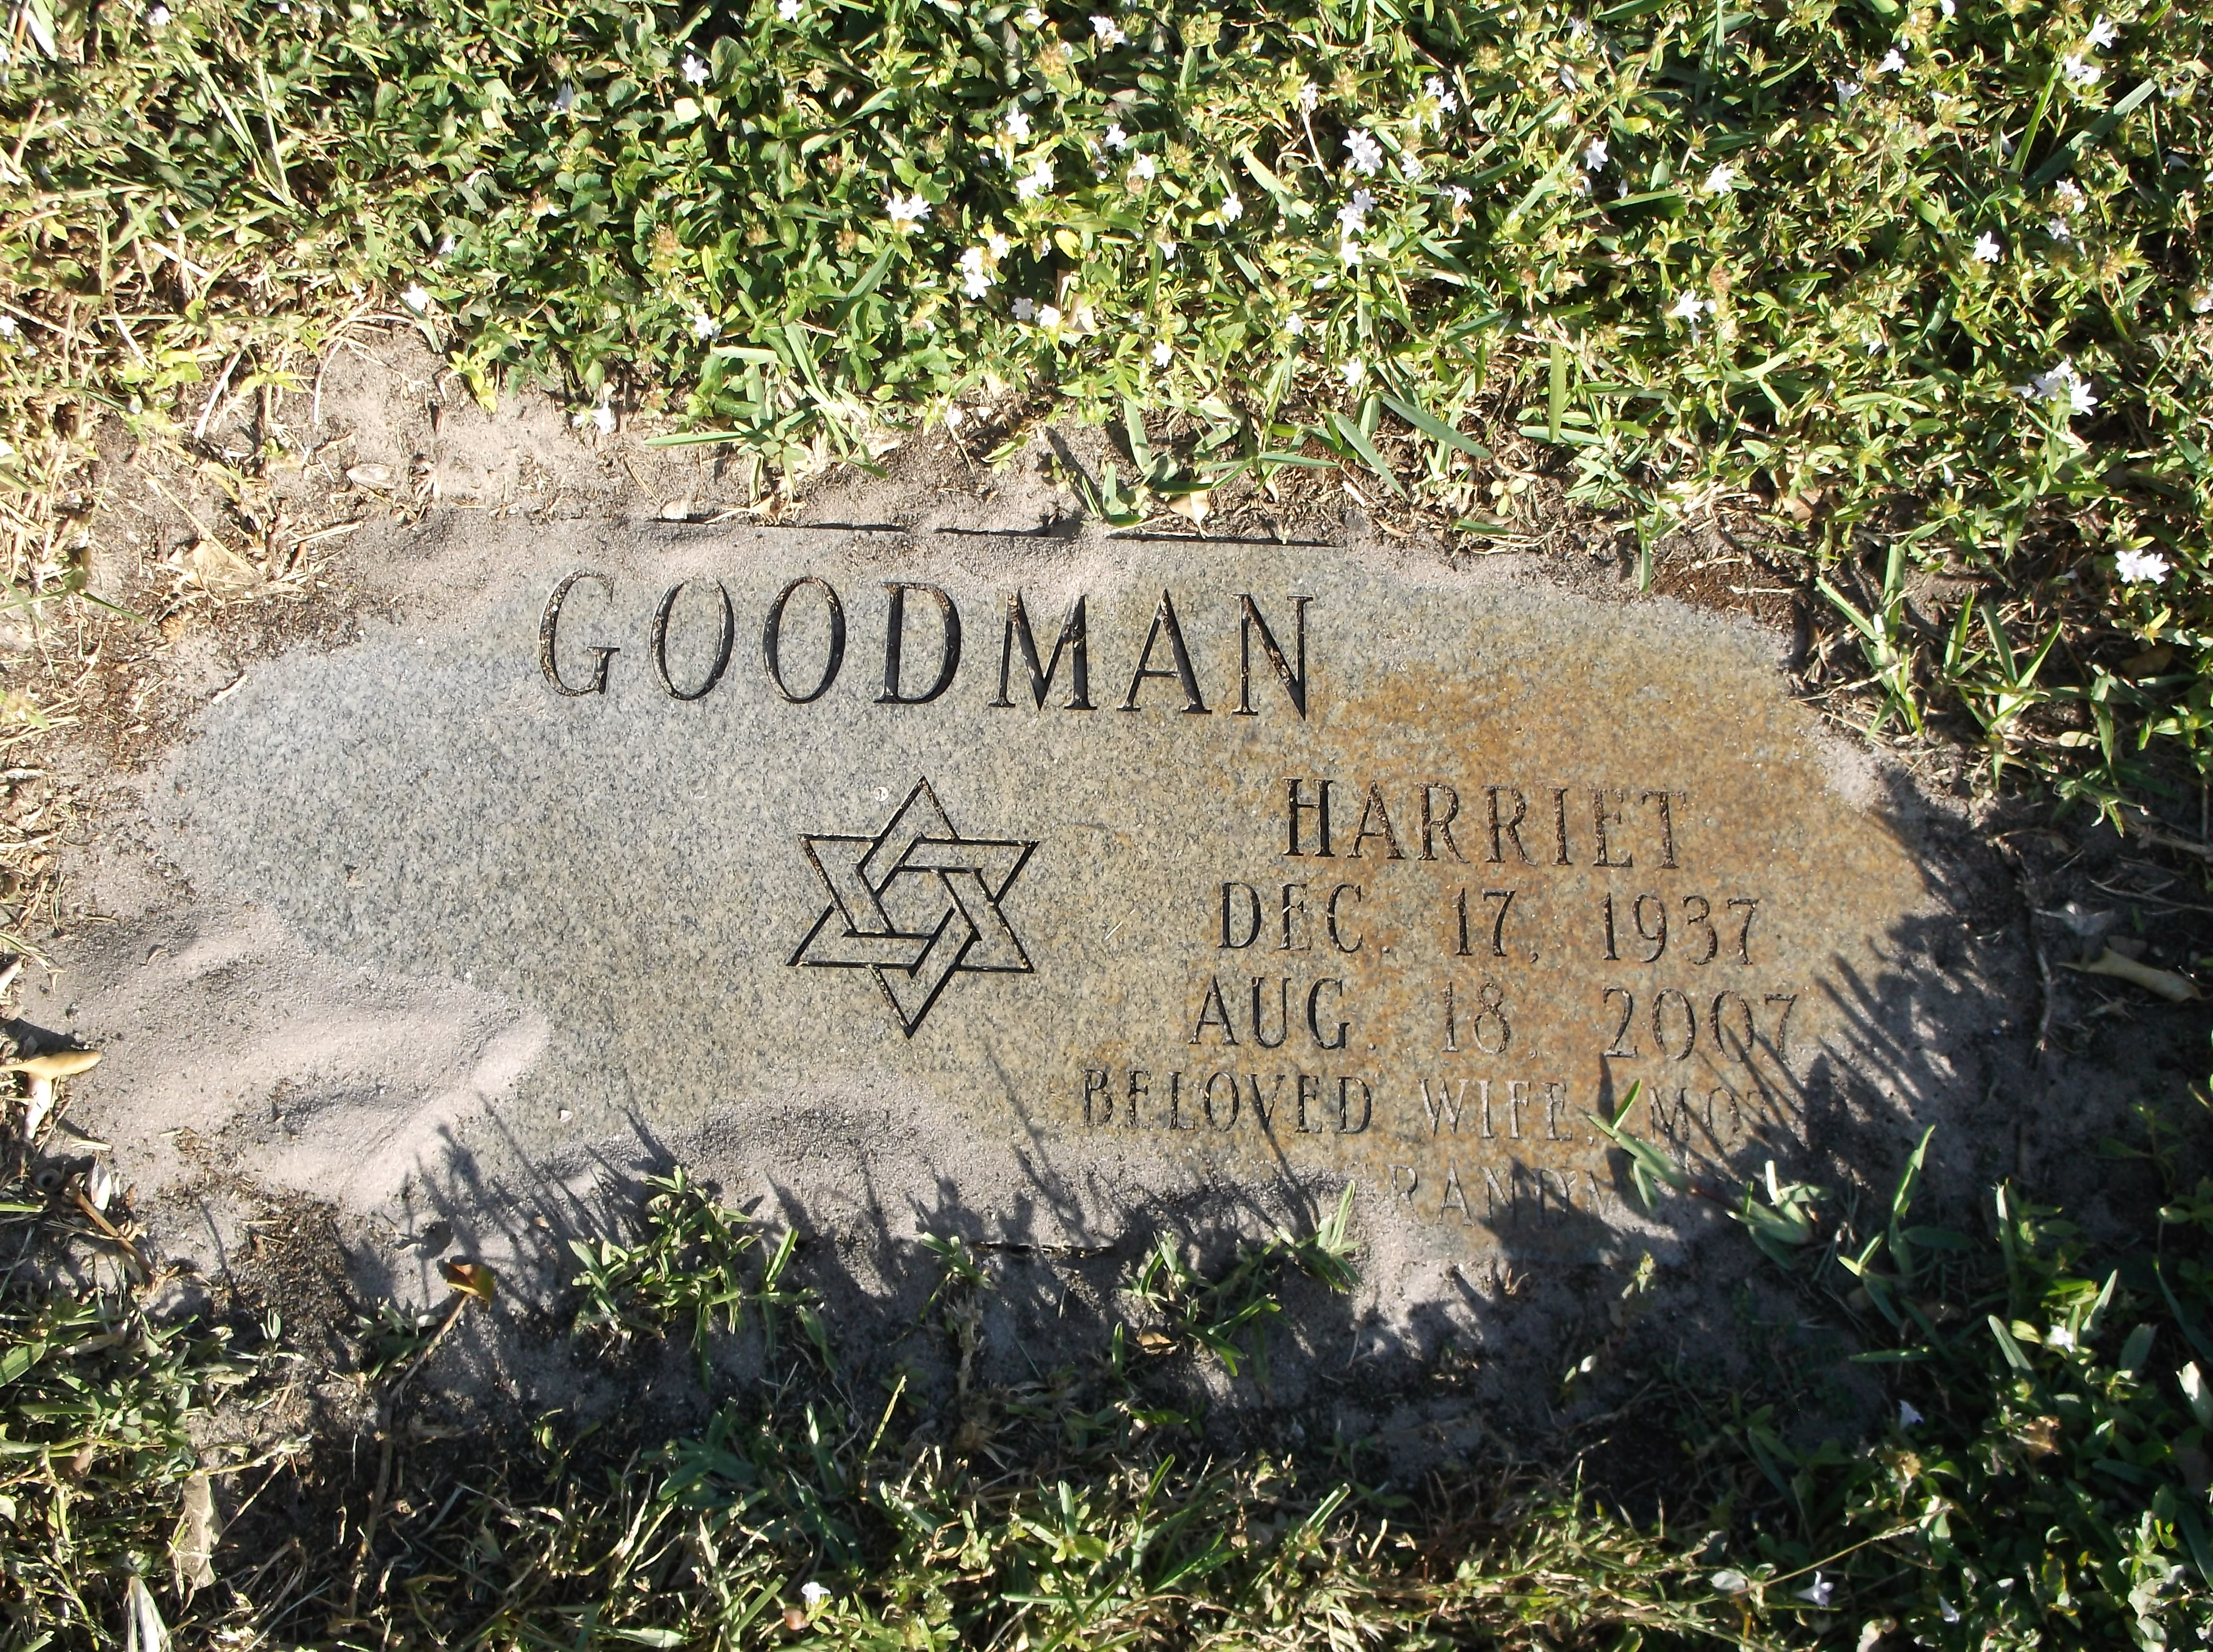 Harriet Goodman